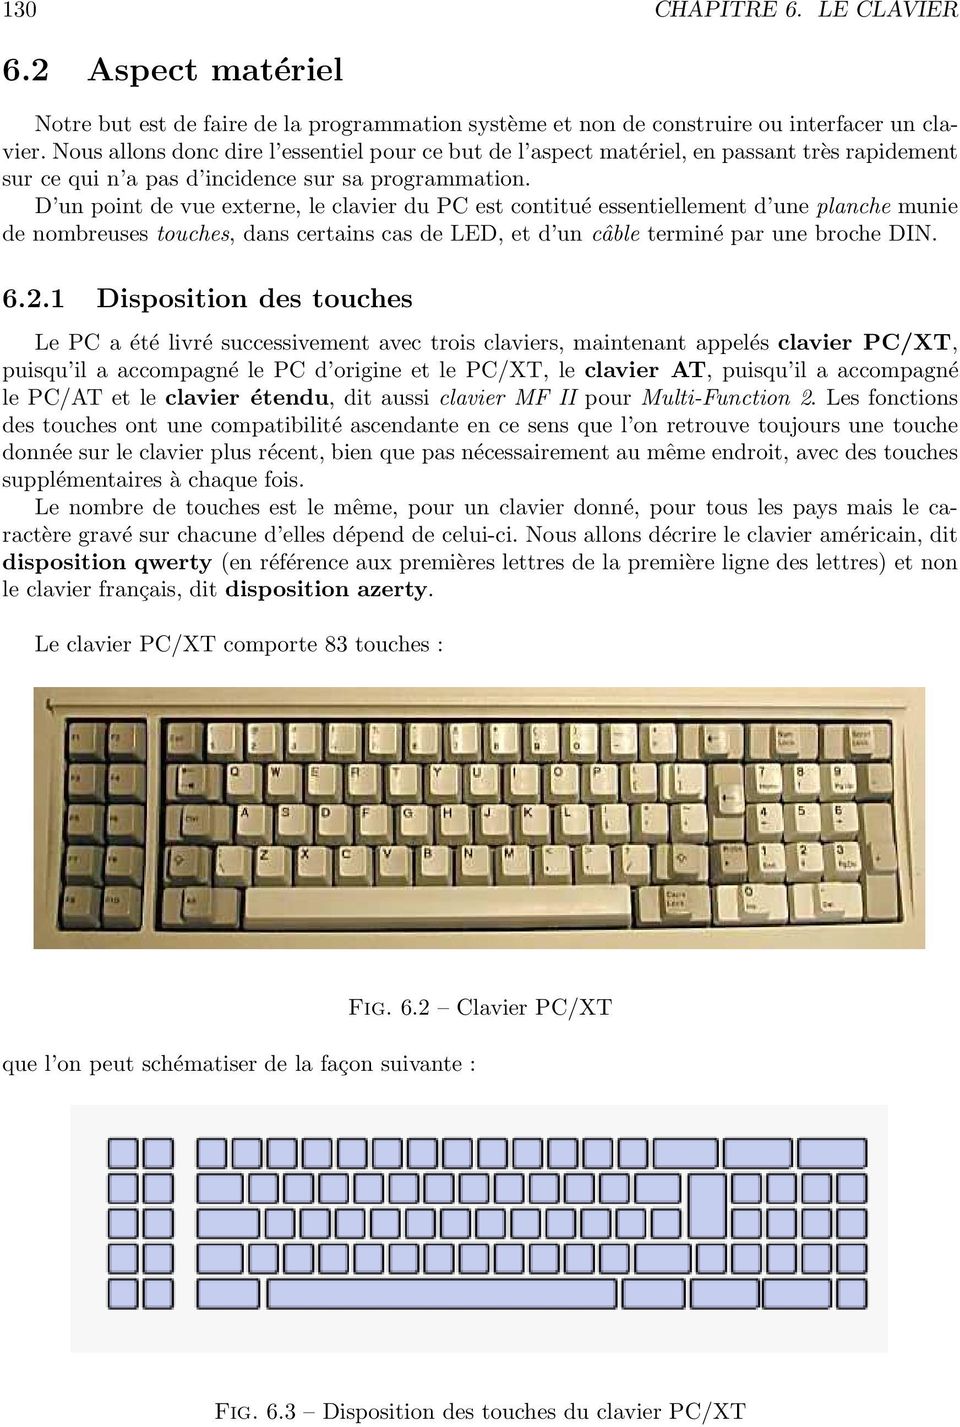 D un point de vue externe, le clavier du PC est contitué essentiellement d une planche munie de nombreuses touches, dans certains cas de LED, et d un câble terminé par une broche DIN. 6.2.